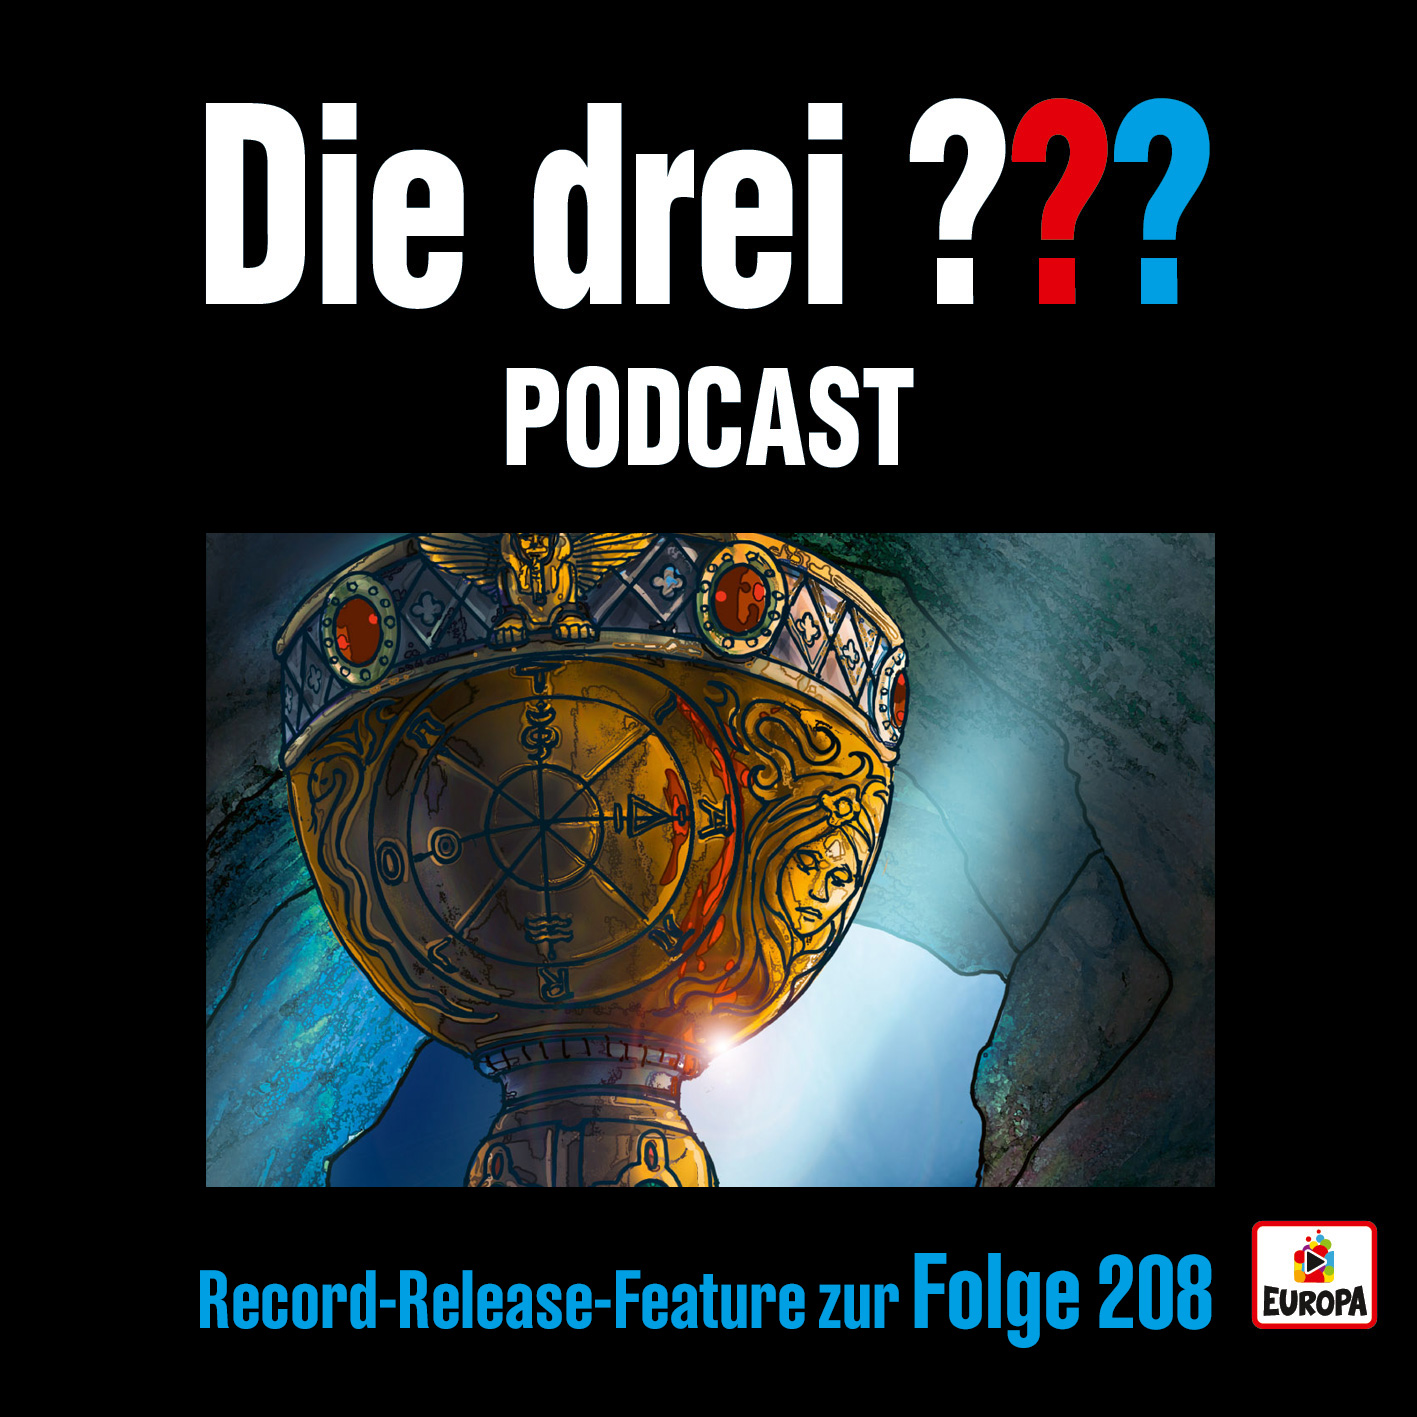 Die drei ???- Podcast Record-Release-Feature 208 - Höre gleich mal rein. 